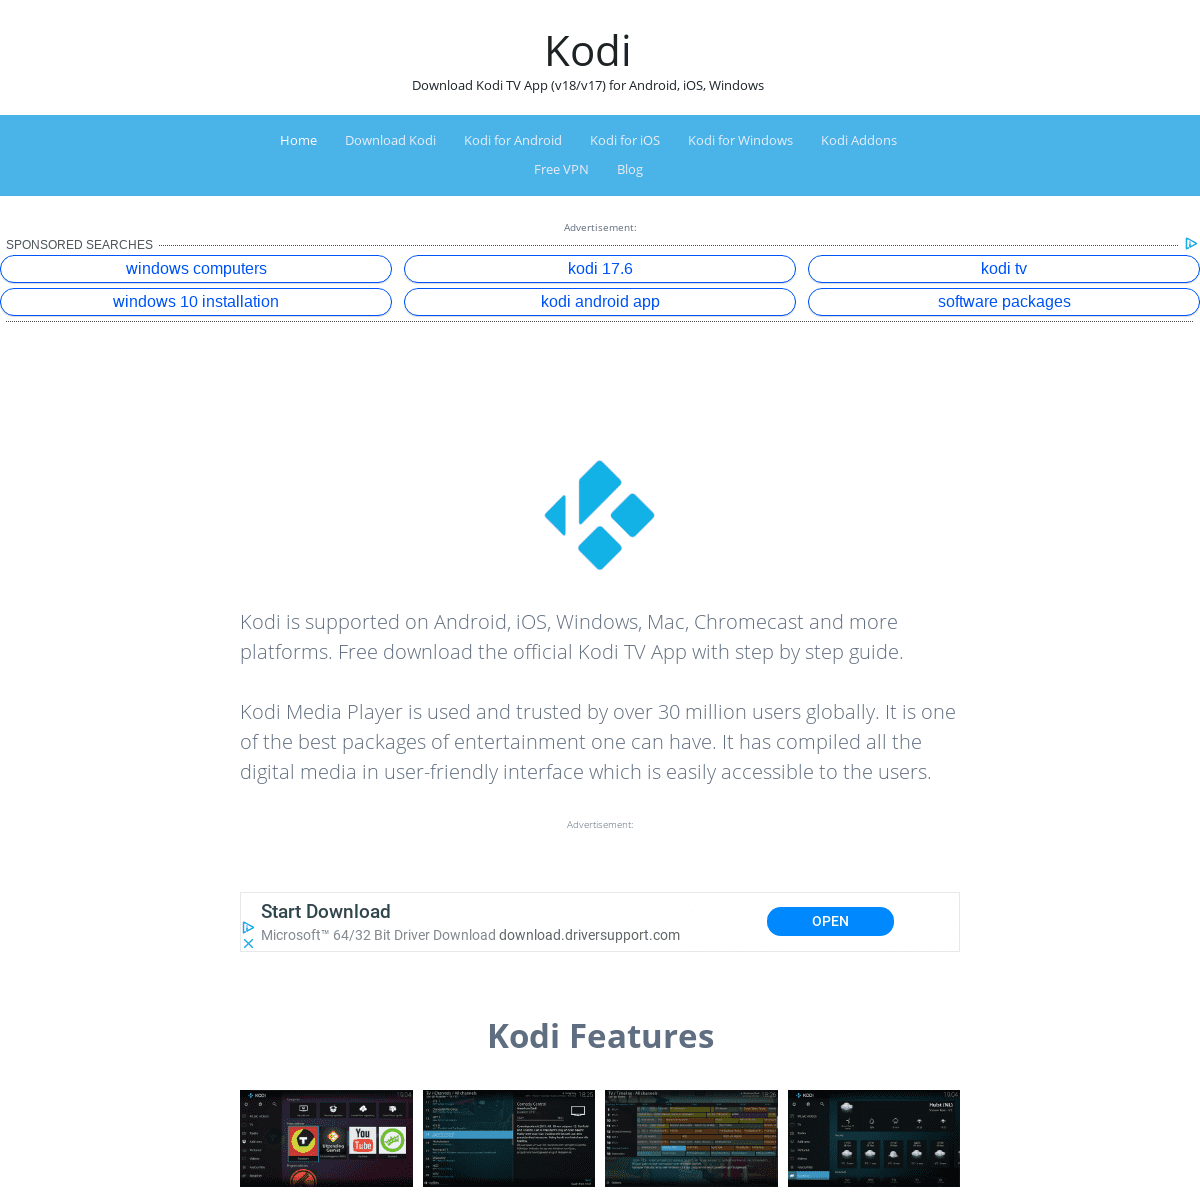 Kodi – Download Kodi TV App (v18/v17) for Android, iOS, Windows